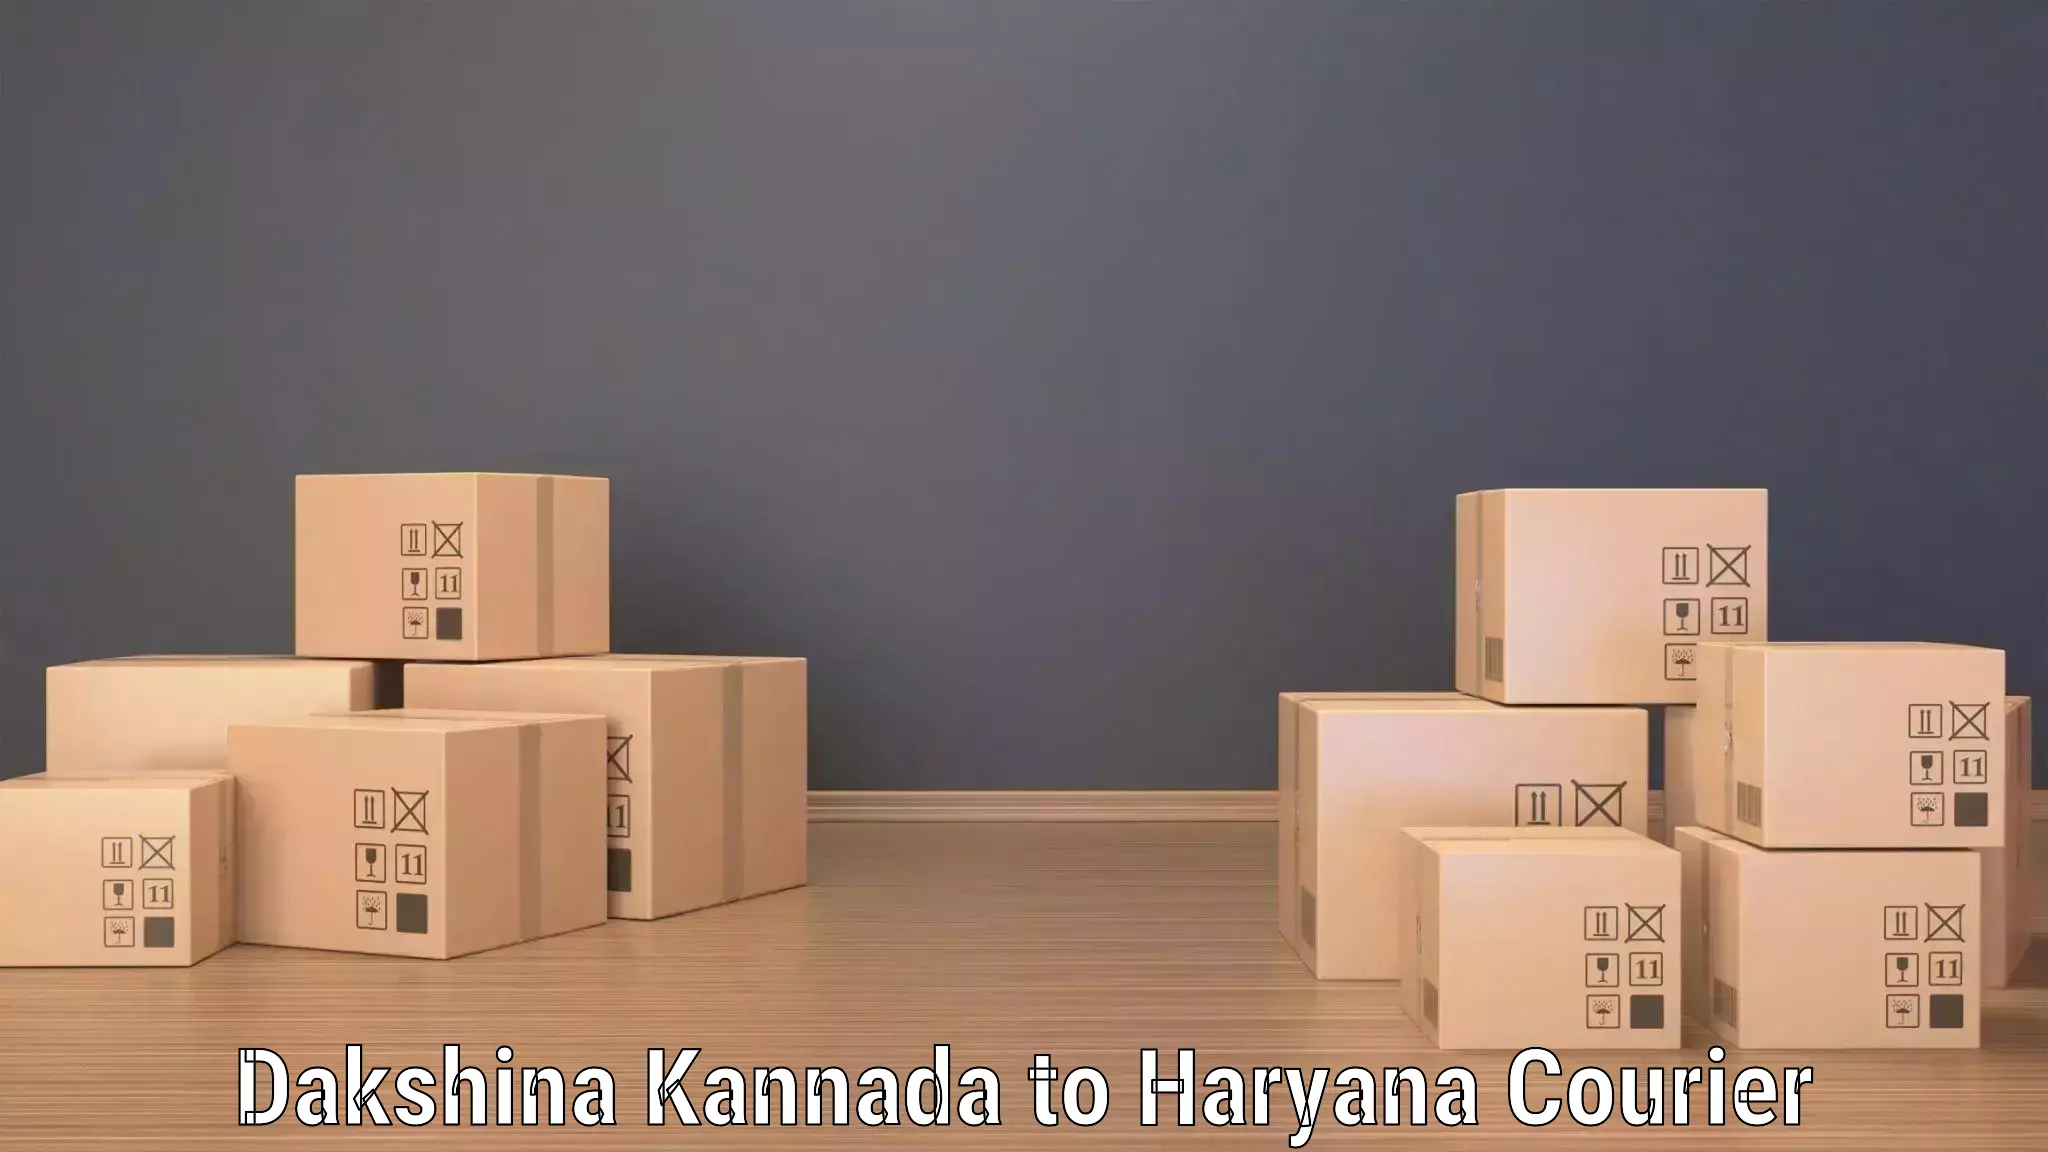 Courier service efficiency Dakshina Kannada to Shahabad Markanda